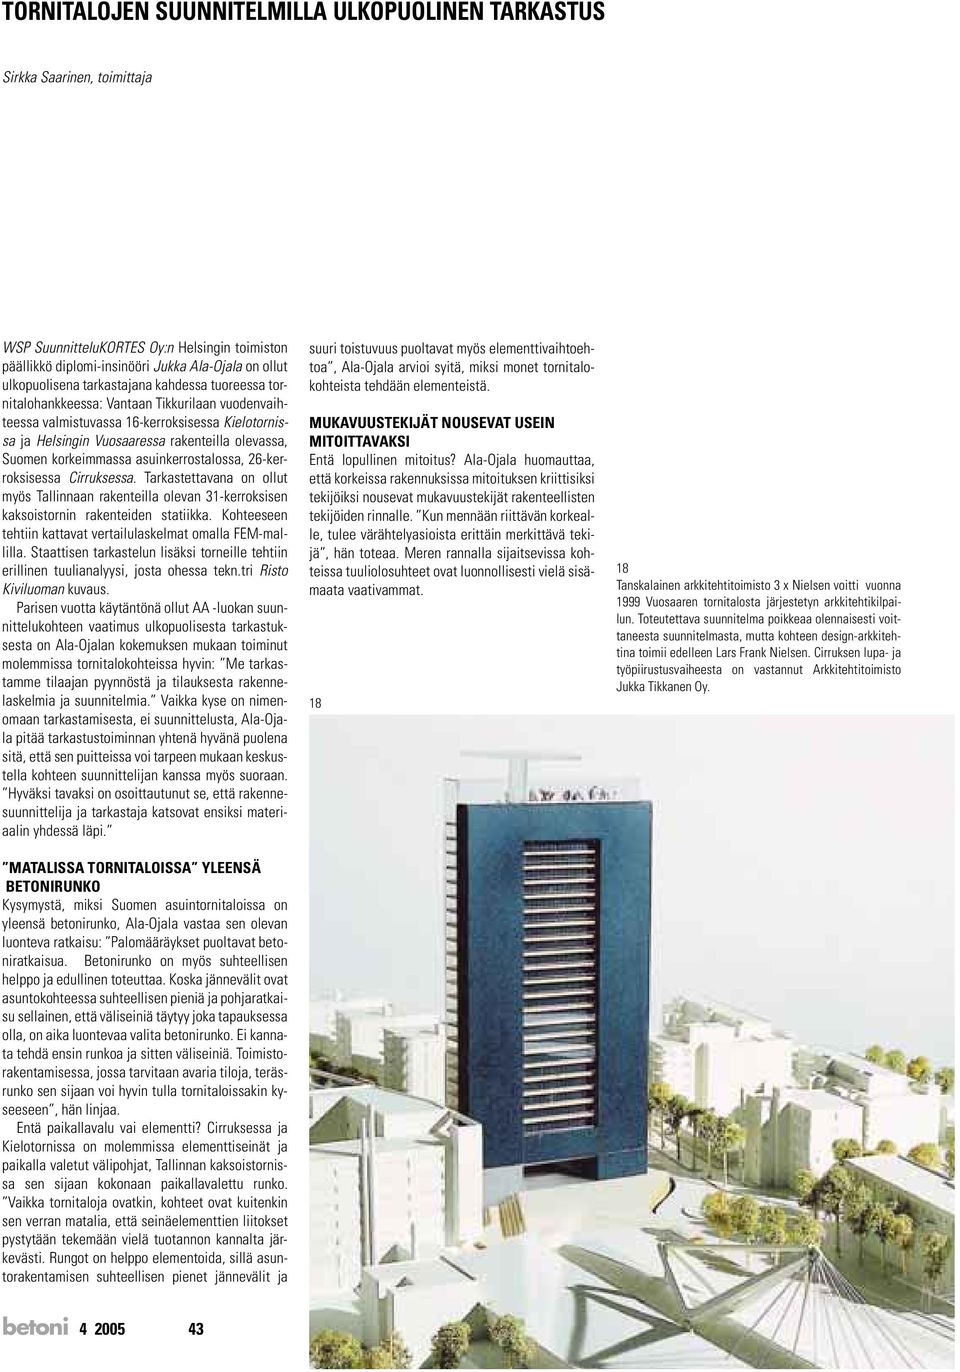 korkeimmassa asuinkerrostalossa, 26-kerroksisessa Cirruksessa. Tarkastettavana on ollut myös Tallinnaan rakenteilla olevan 31-kerroksisen kaksoistornin rakenteiden statiikka.